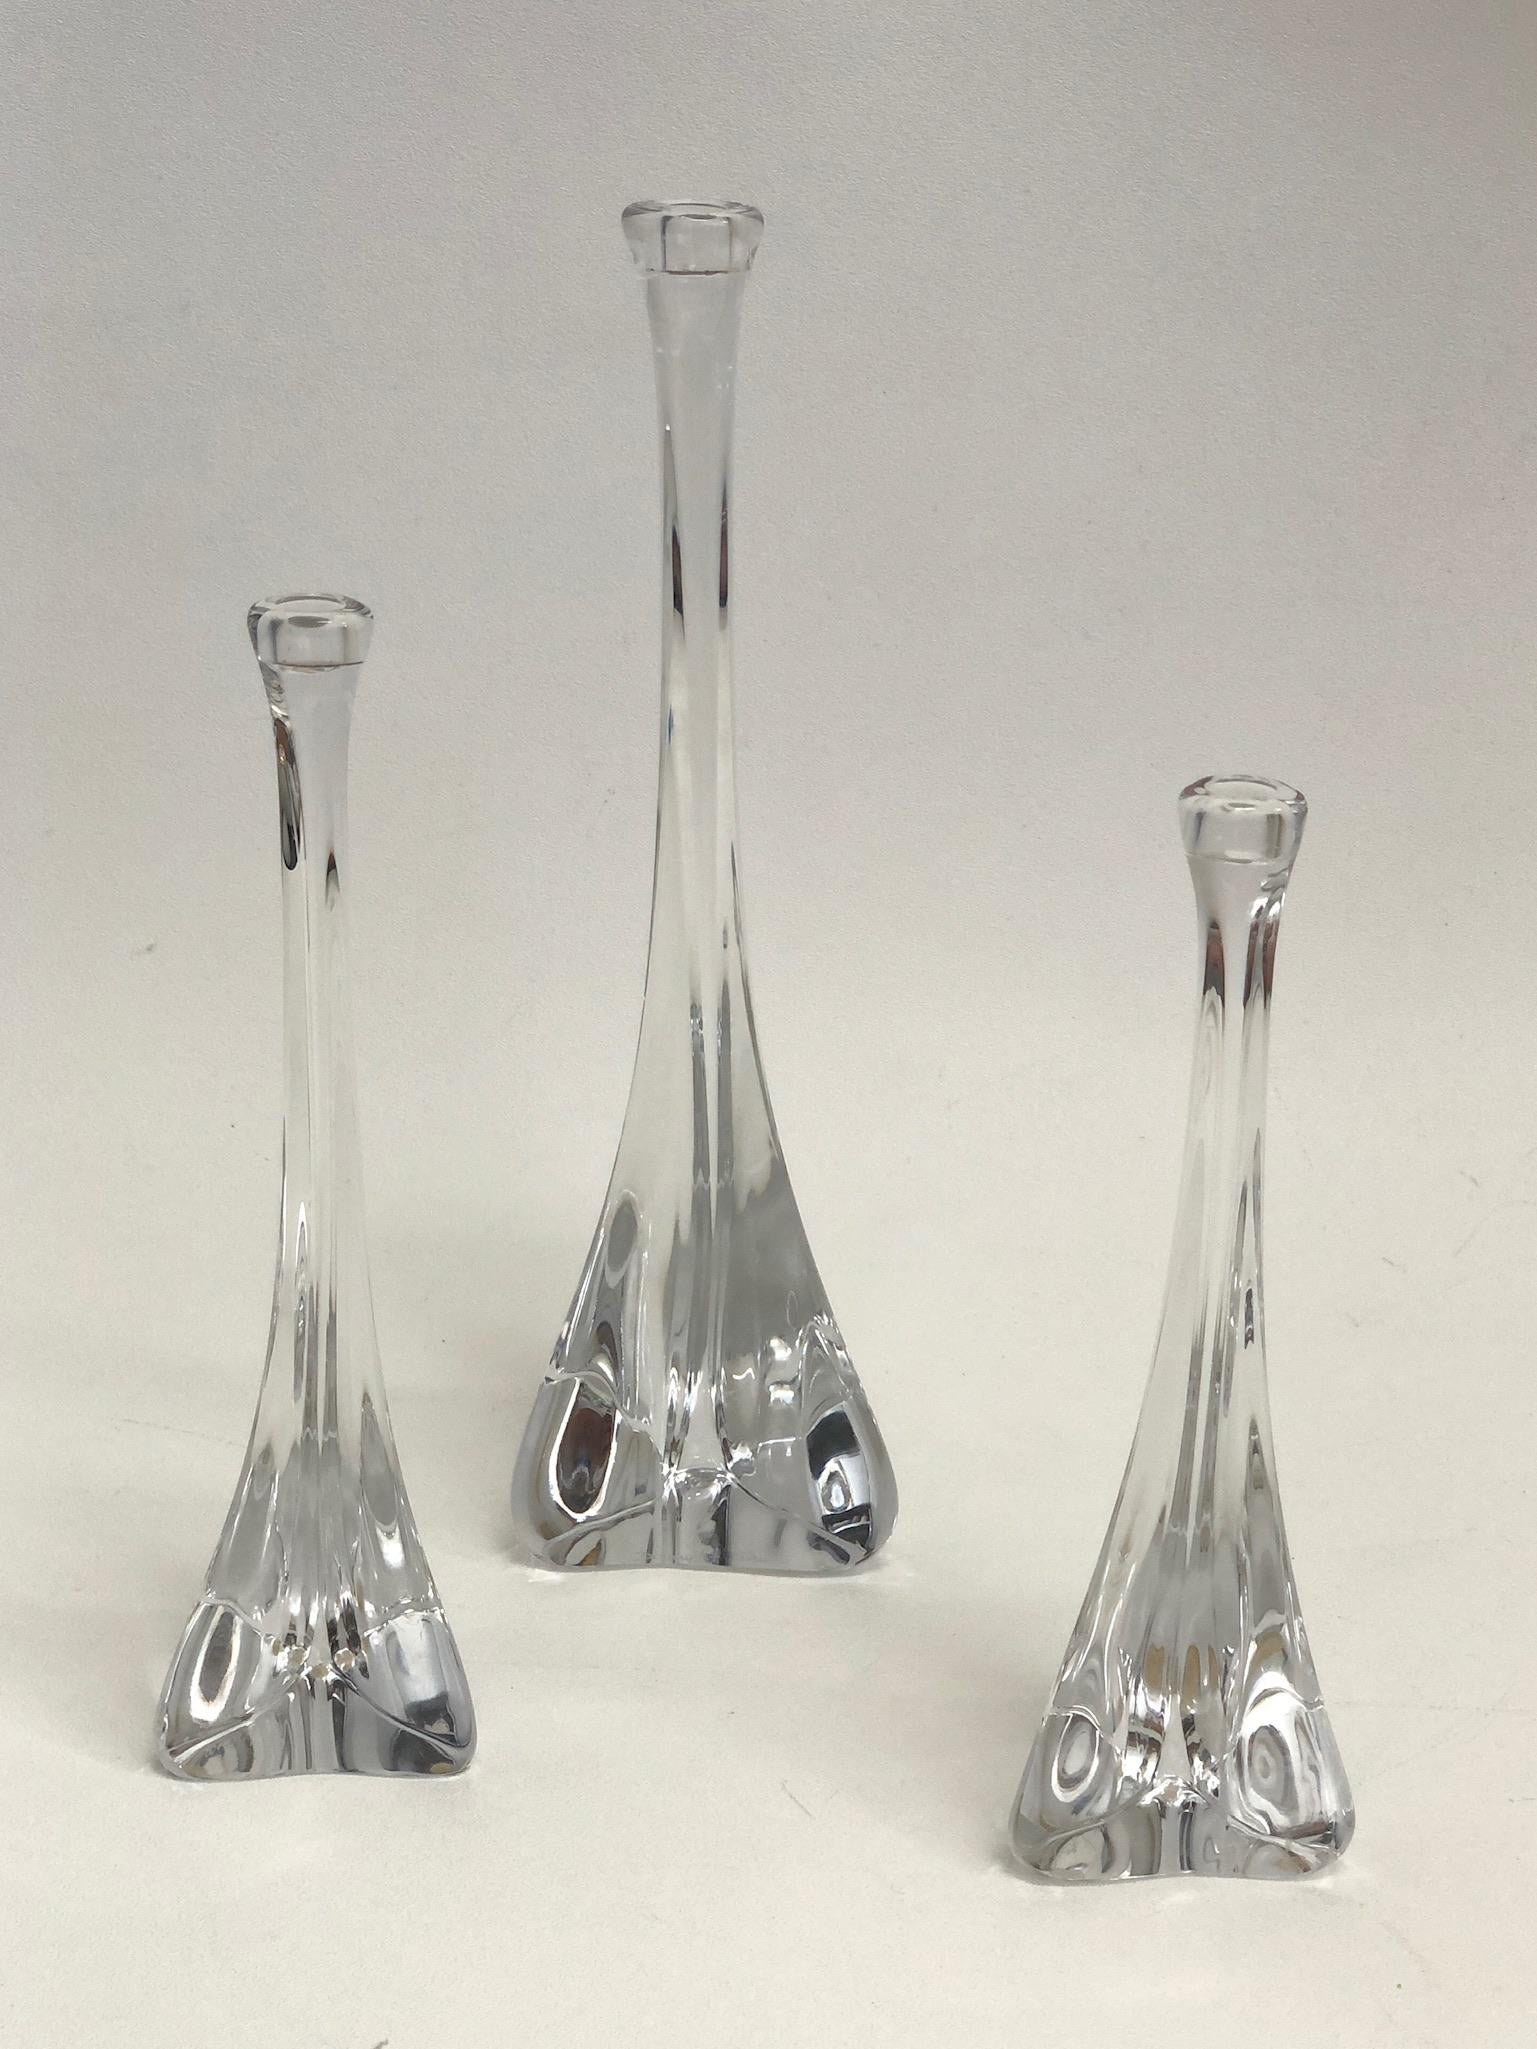 Set aus drei französischen Kristallkerzenhaltern von Daum aus den 1970er Jahren.
Diese sind mundgeblasen und haben einen dreieckigen Sockel.
Sie sind alle mit Daum France signiert (siehe Detailfotos).

Abmessungen: 
L- 13